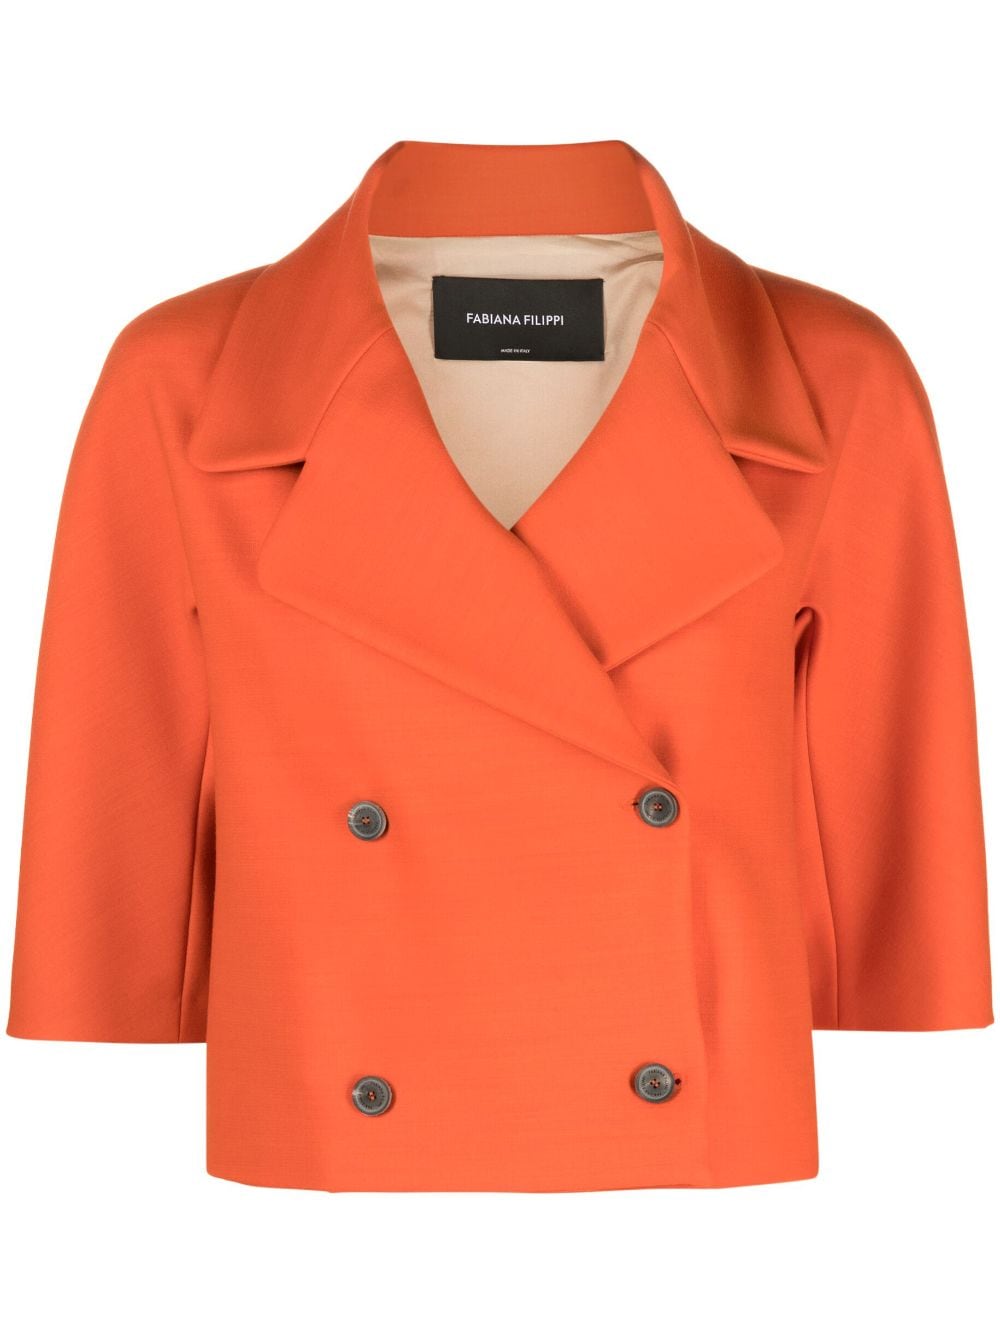 Fabiana Filippi cropped double-breasted jacket - Orange